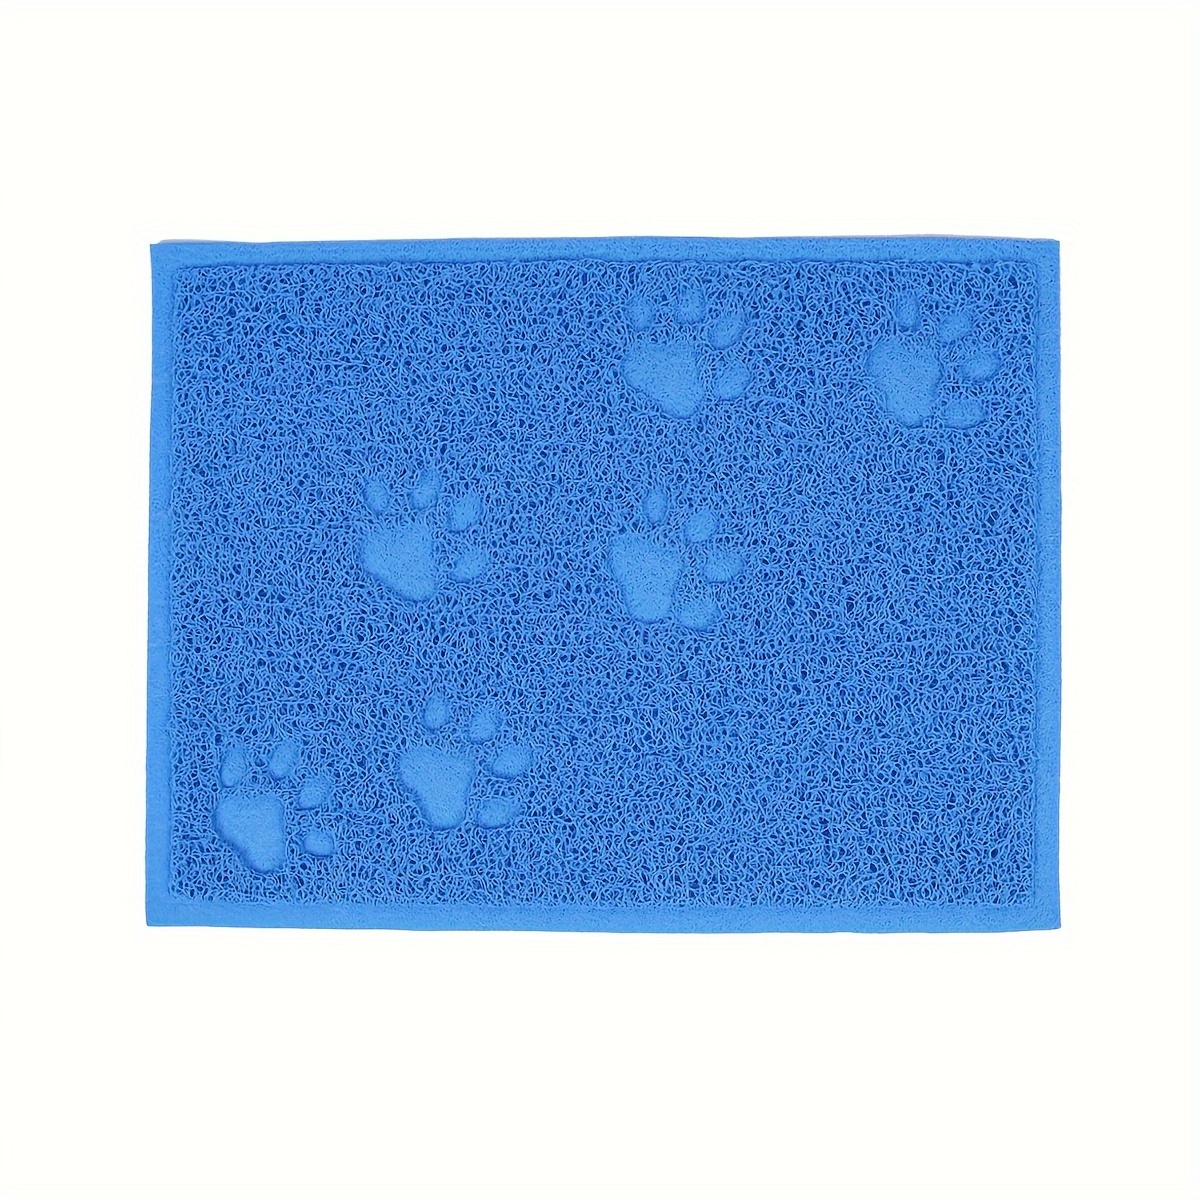 1pc Paw Print Cat Litter Mat